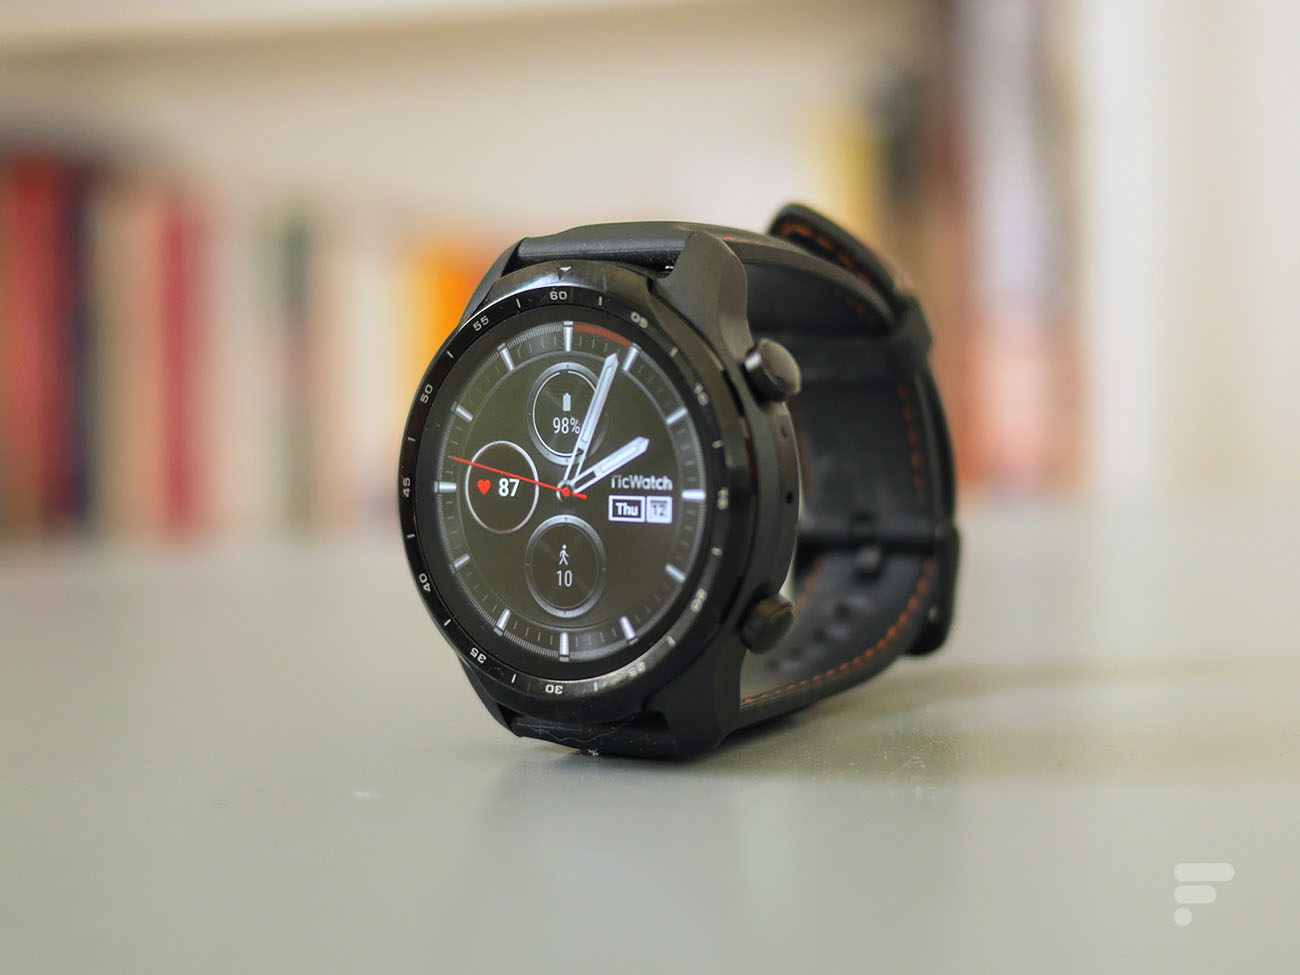 Ticwatch E3 Montre Connectée Wear OS by Google avec la Plate-Forme Qualcomm  Snapdragon Wear 4100+ Double Système GPS Intégré Surveillance de la  Fréquence Cardiaque Suivi du Sommeil Gestion du Stress : 